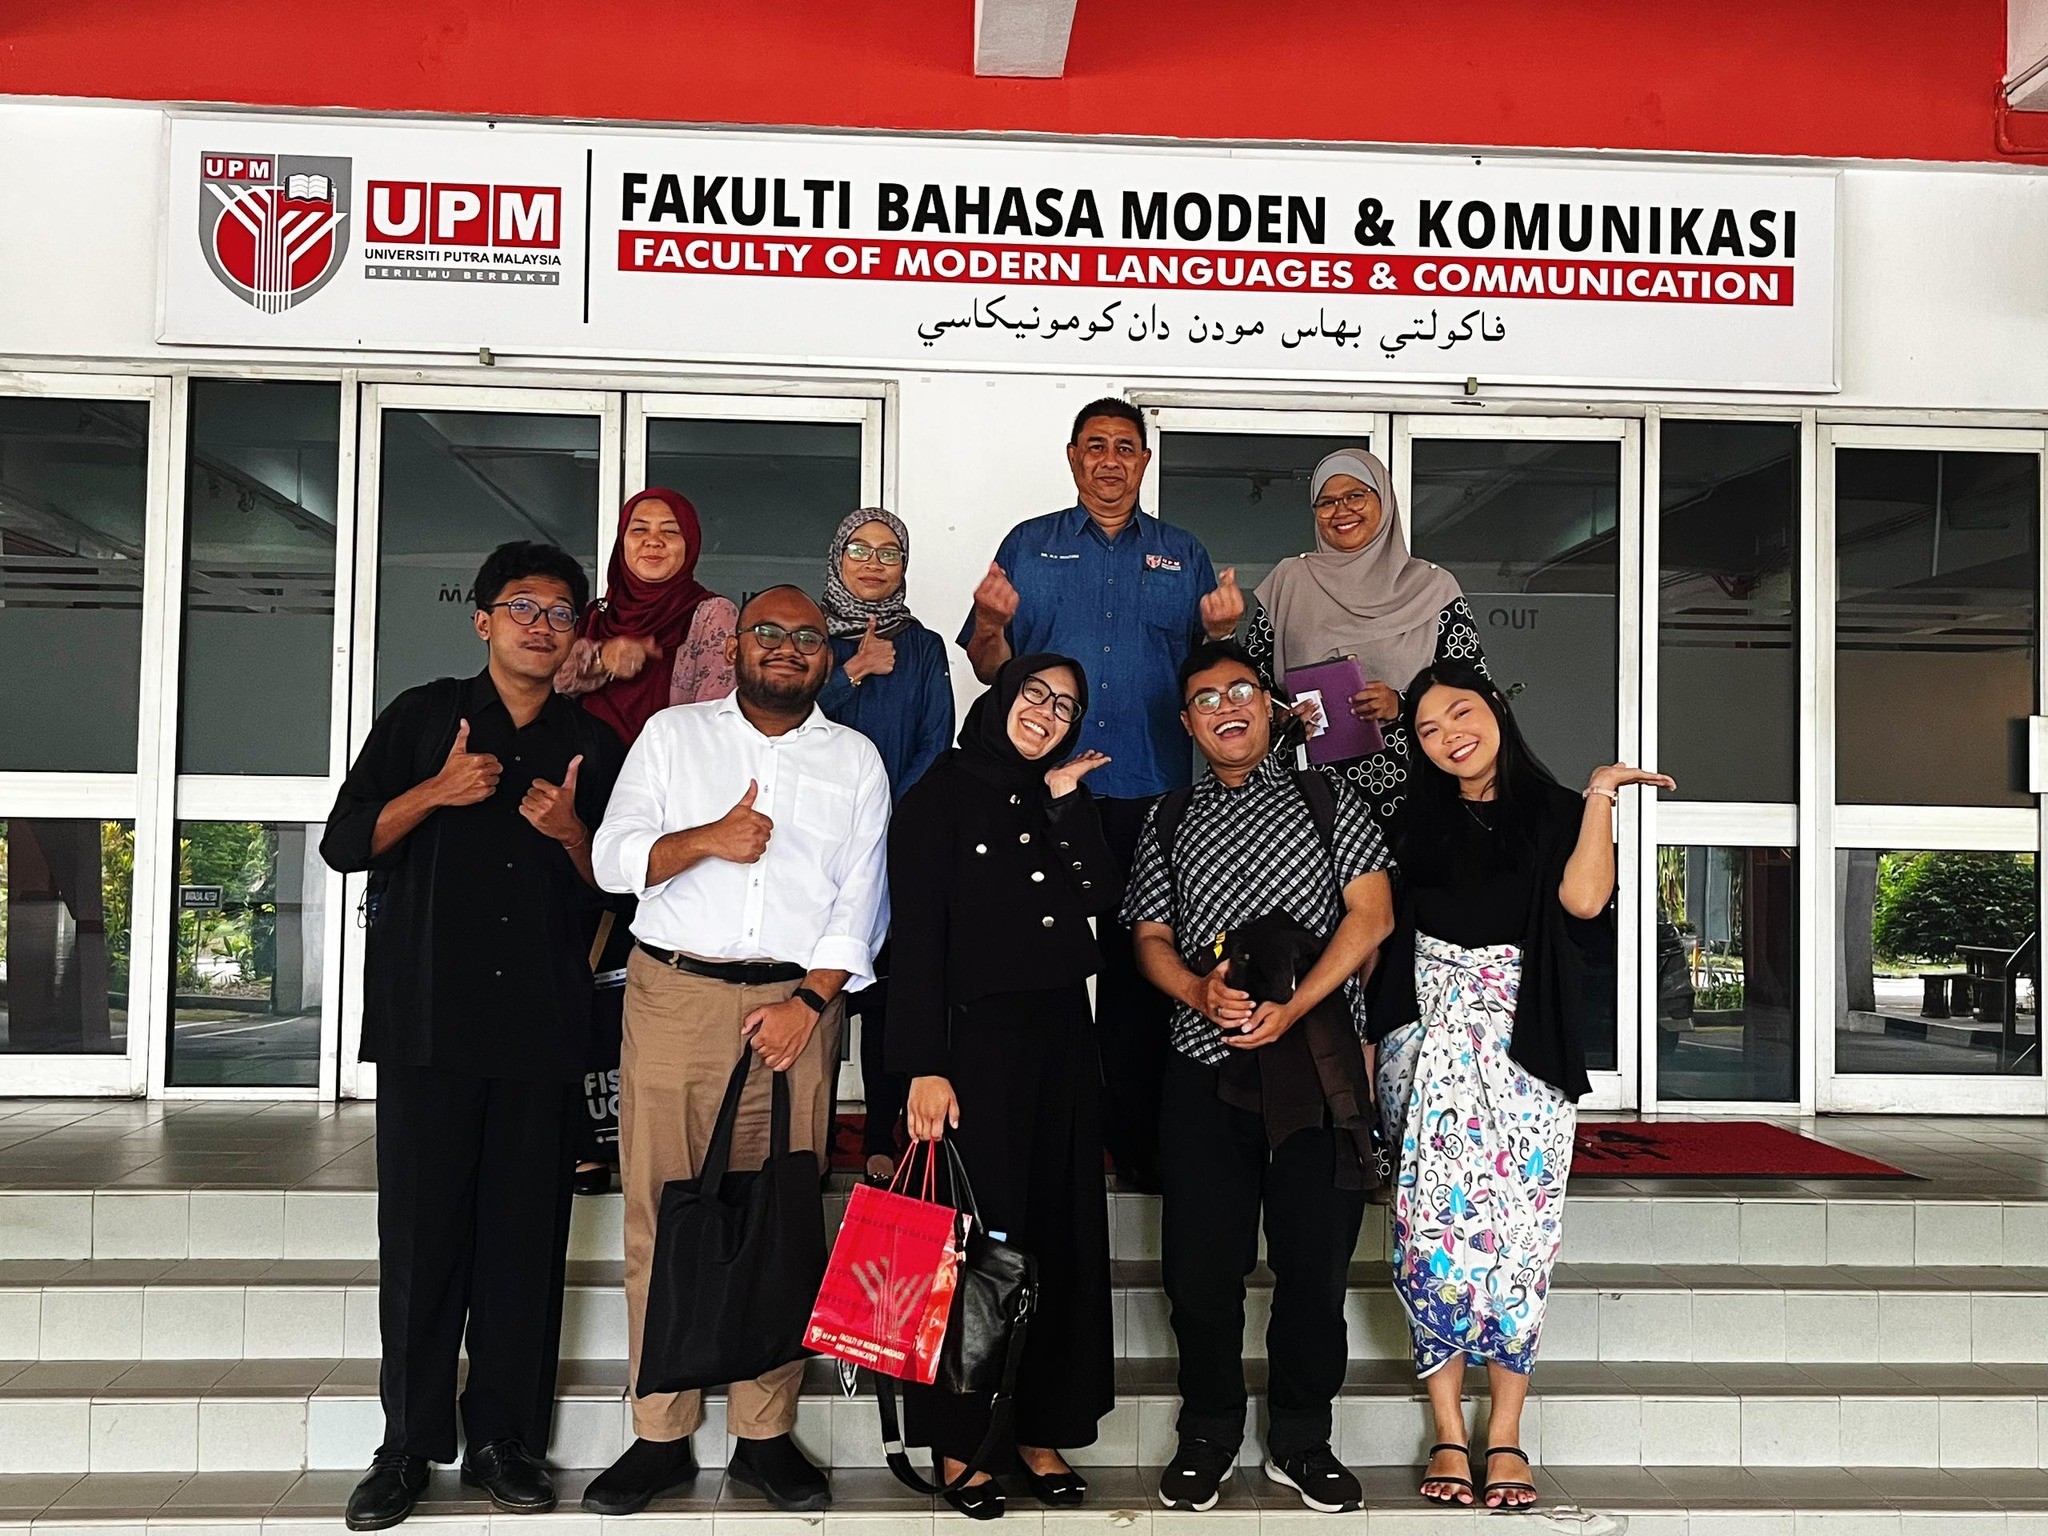 Sesi perkongsian bersama FISIPOL Universitas Gadjah Mada, Yogyakarta, Indonesia